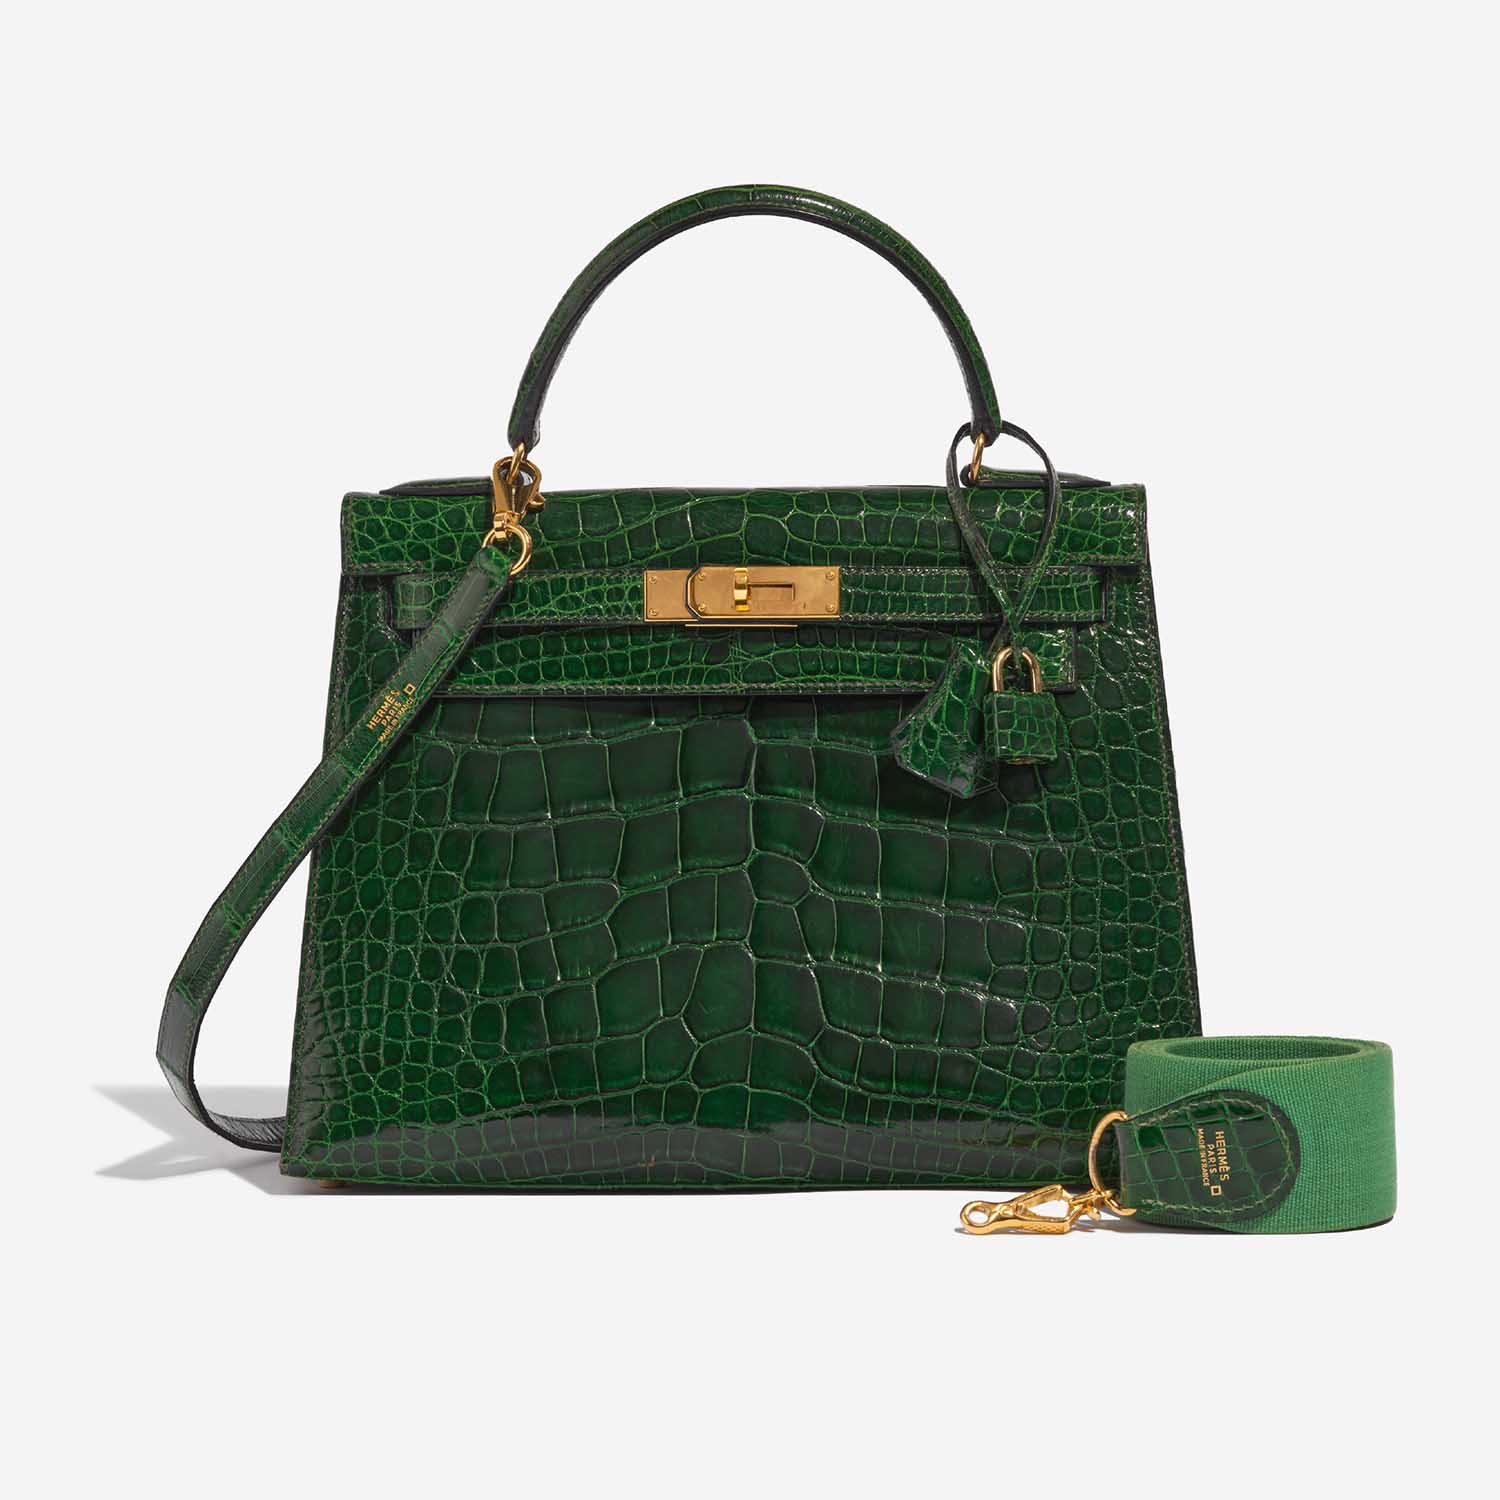 Pre-owned Hermès Tasche Kelly 28 Alligator Mississippiensis Vert Emeralde Grün Front | Verkaufen Sie Ihre Designer-Tasche auf Saclab.com